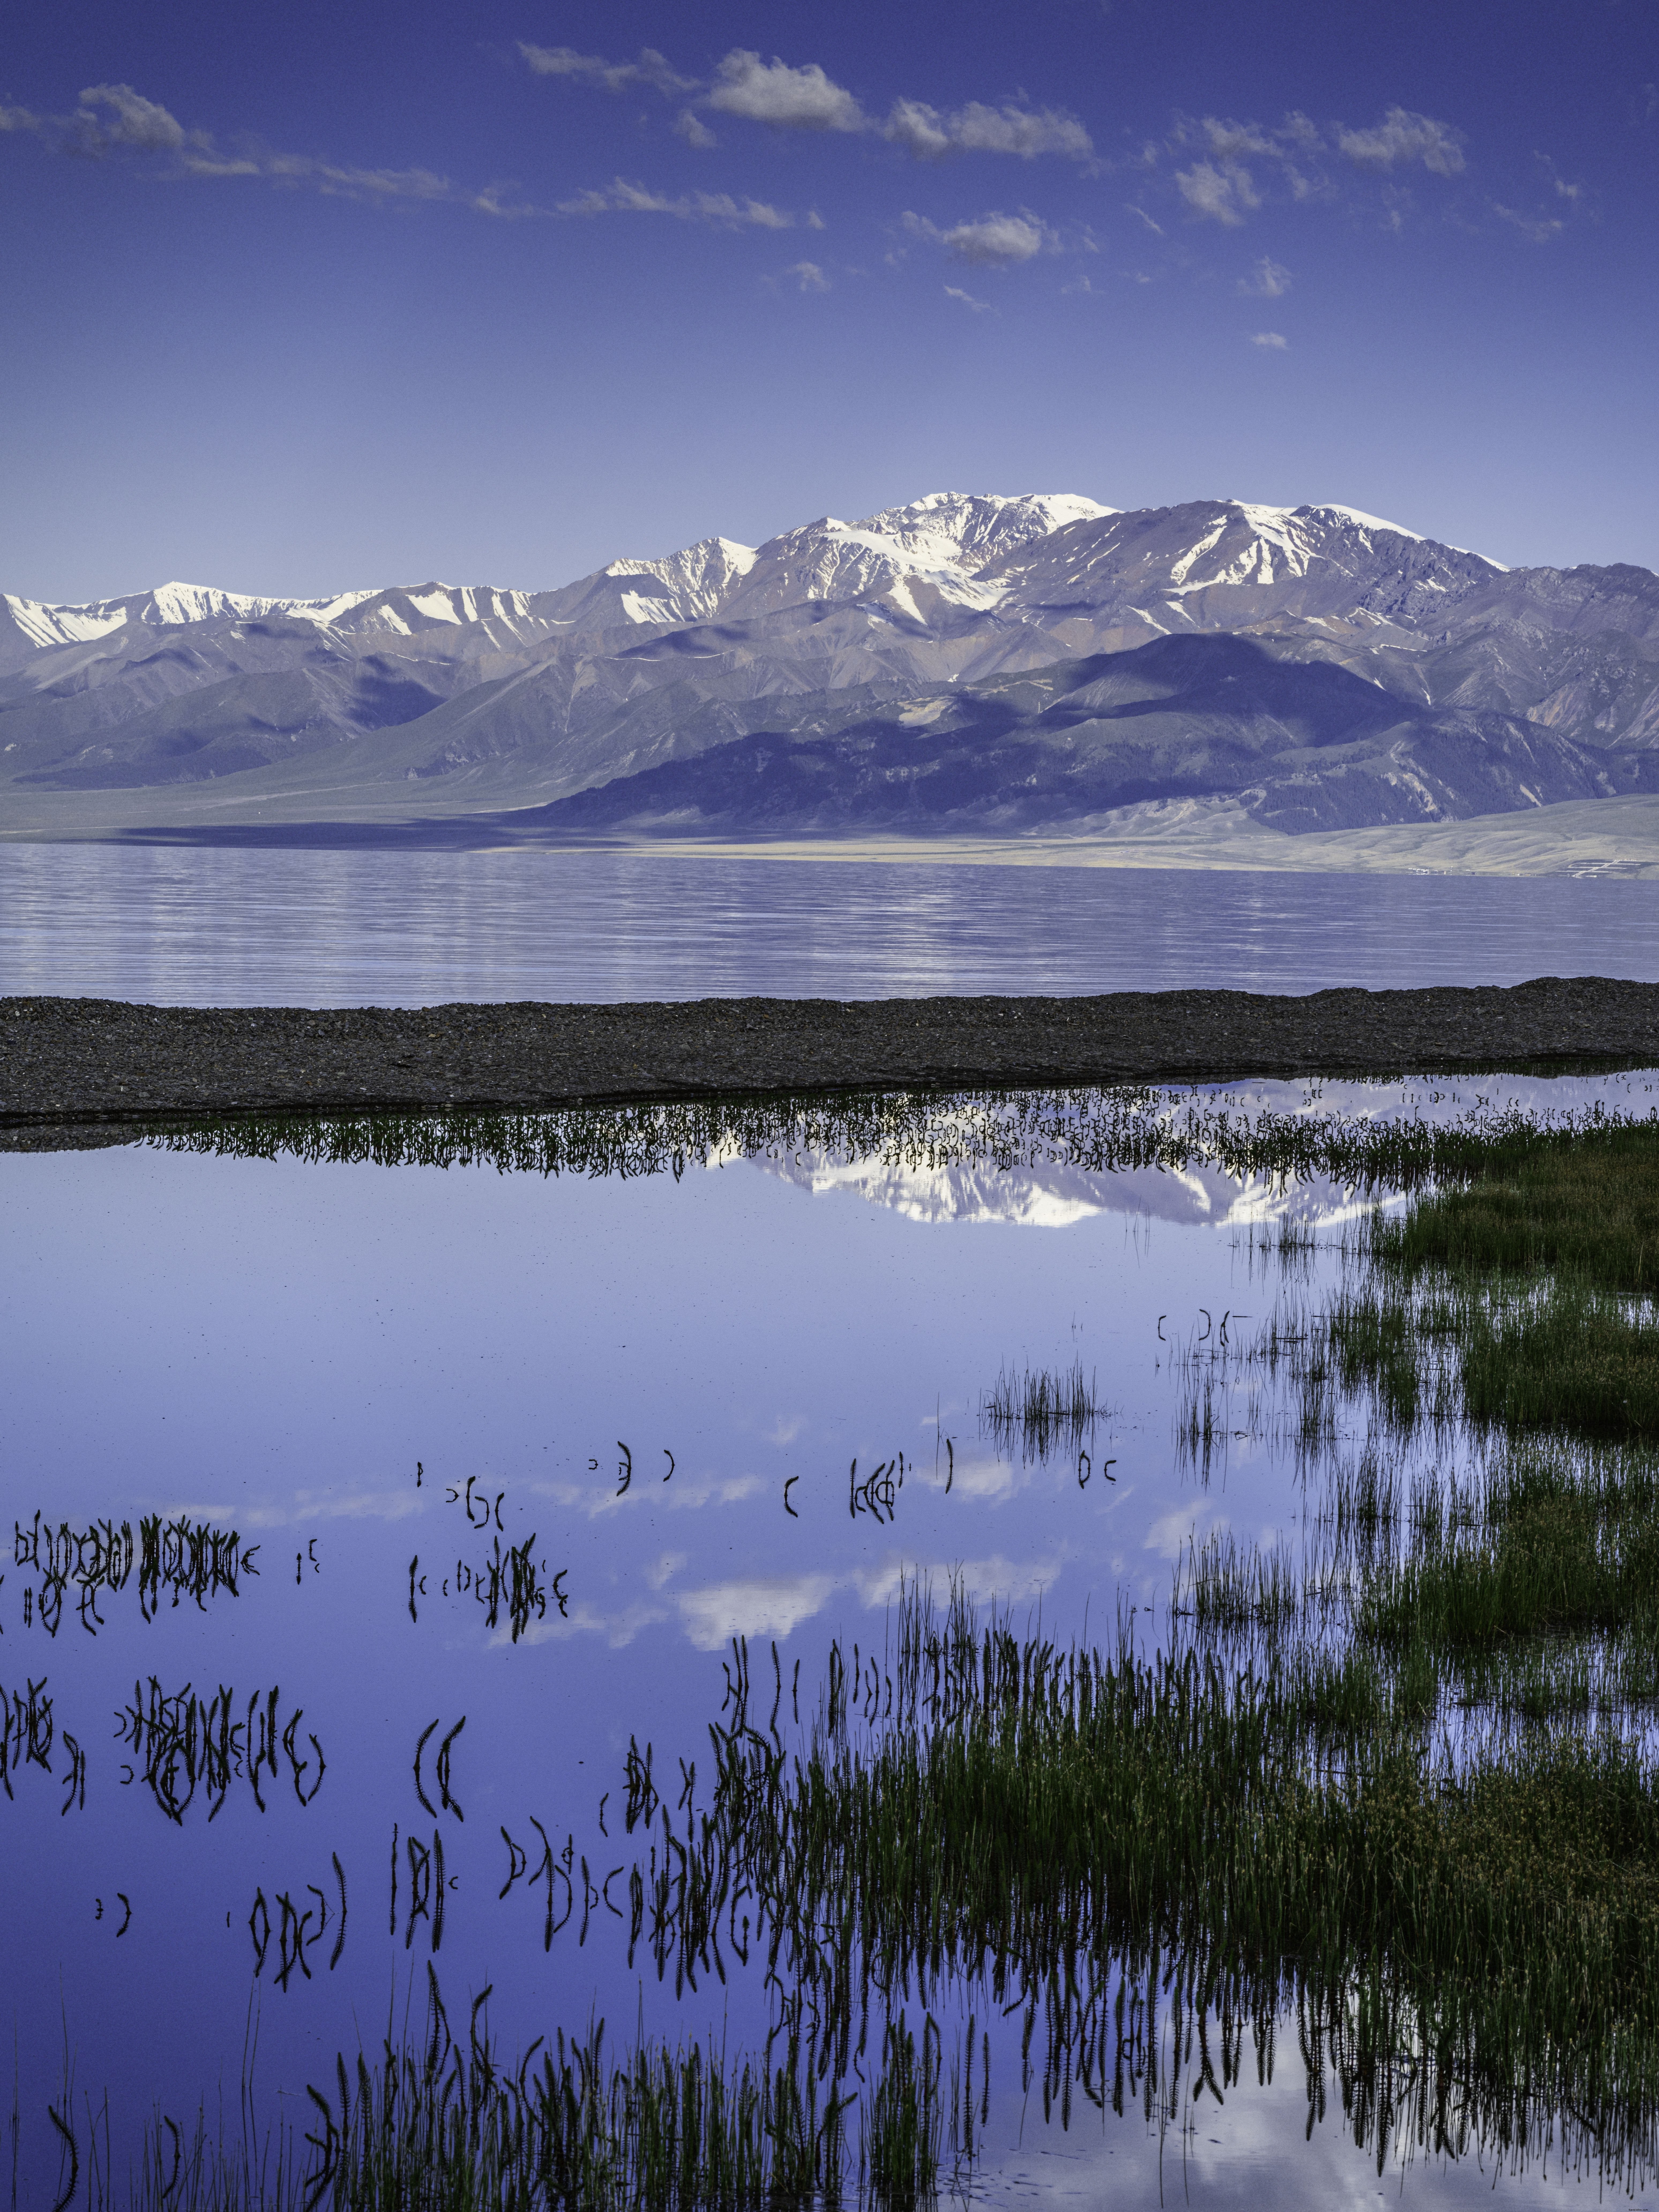 Montañas reflejadas en el lago debajo de la foto 